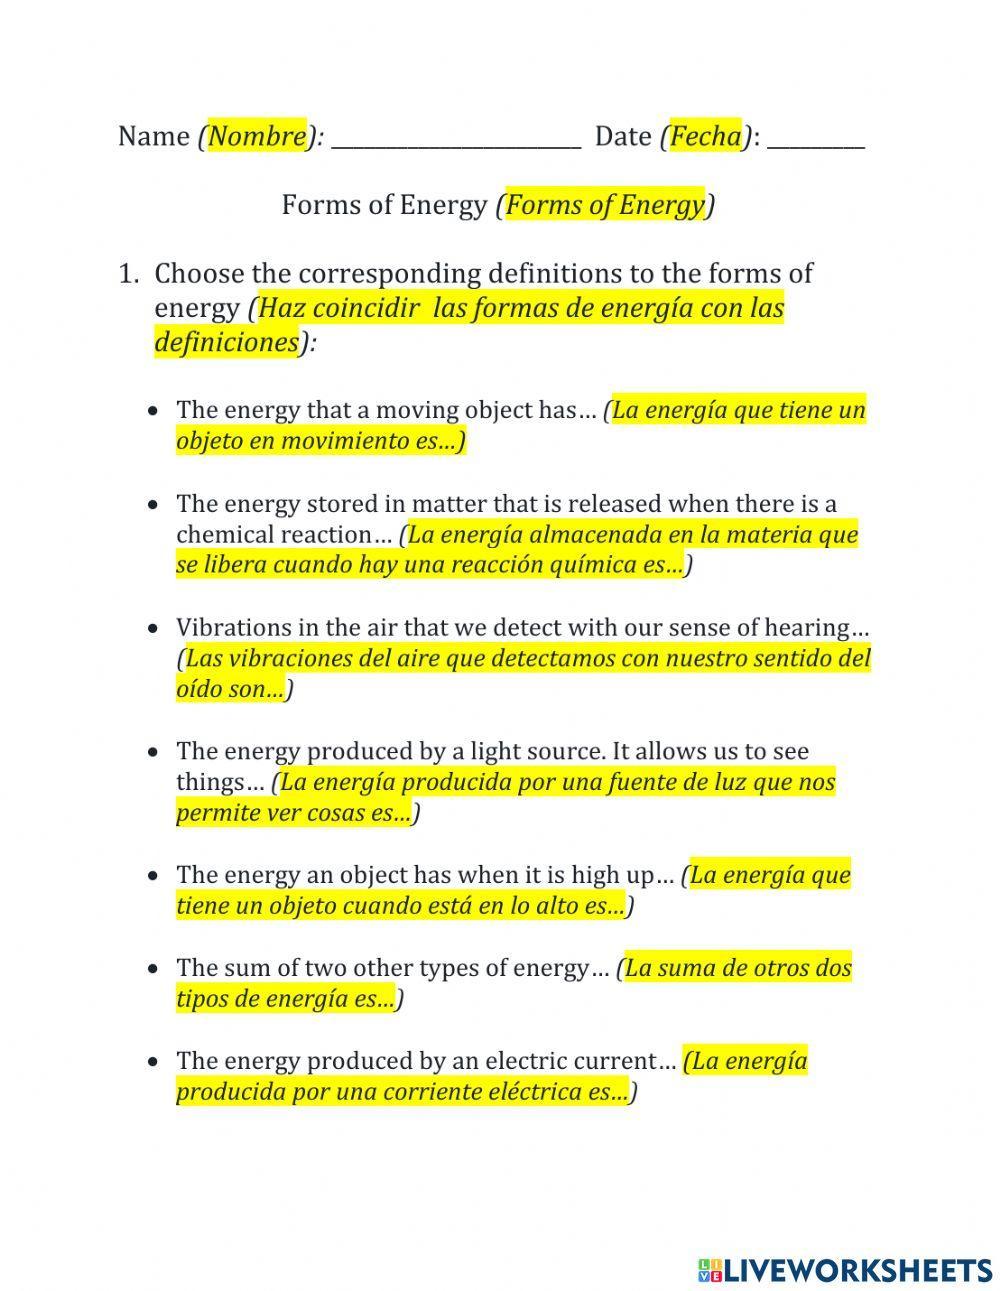 Forms of Energy - Formas de Energía